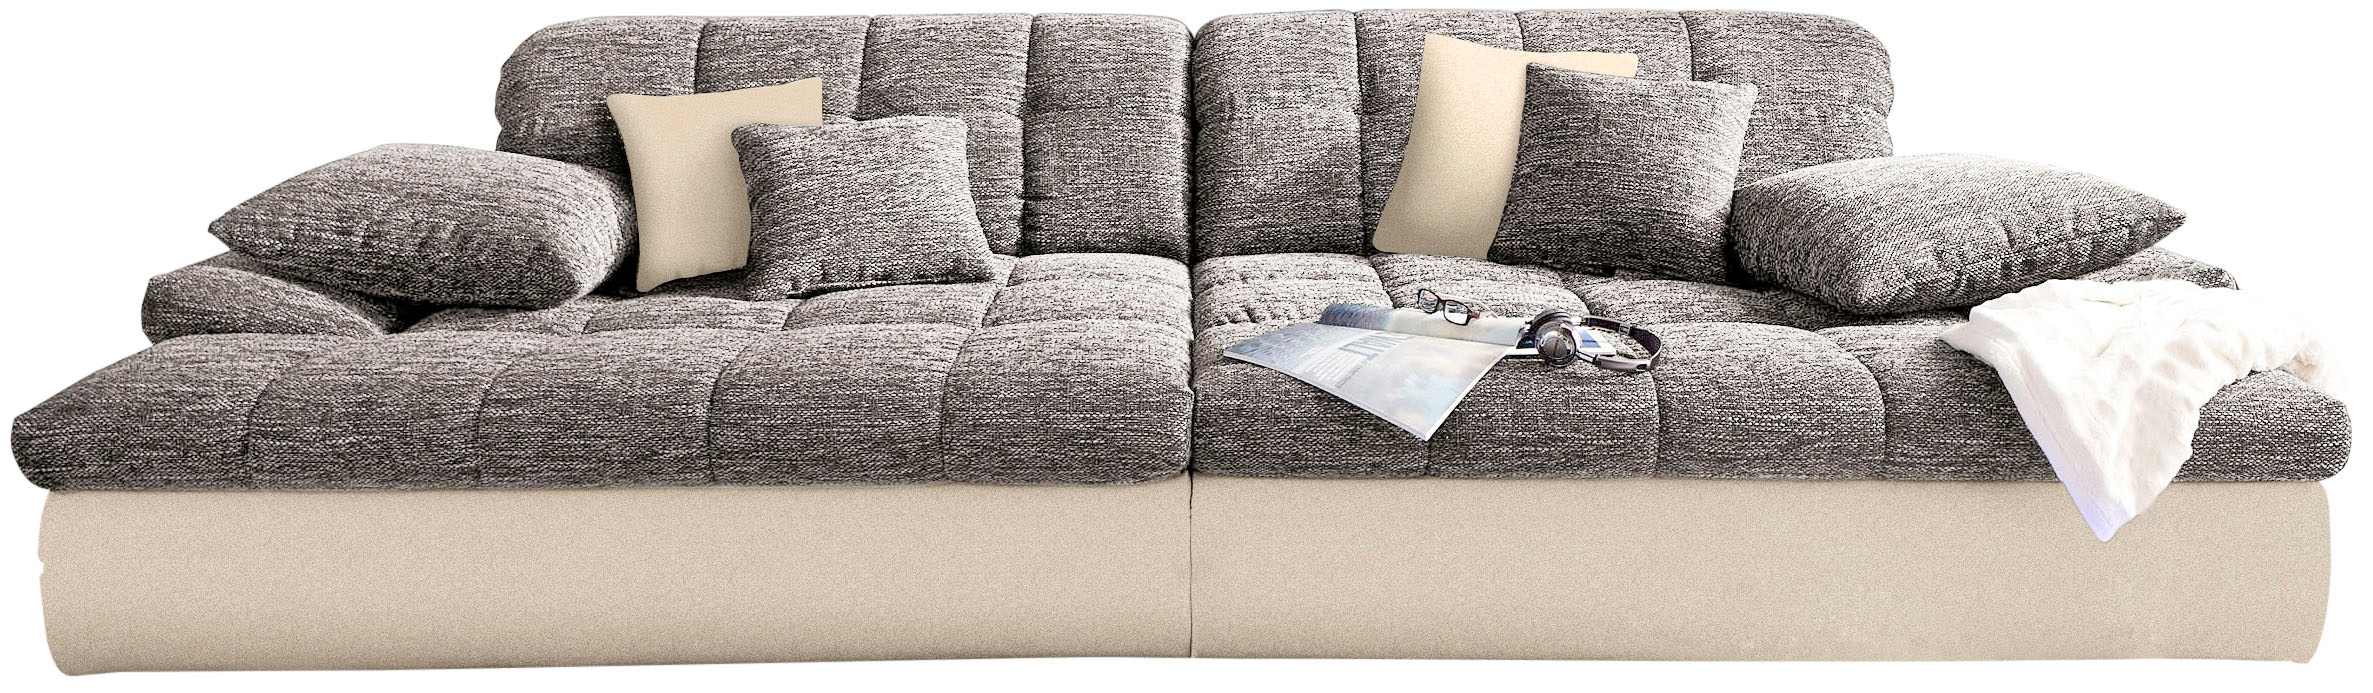 (140kg acheter Belastung/Sitz) Couch Big-Sofa wahlweise mit Kaltschaum Mr. RGB-Beleuchtung »Biarritz«, und